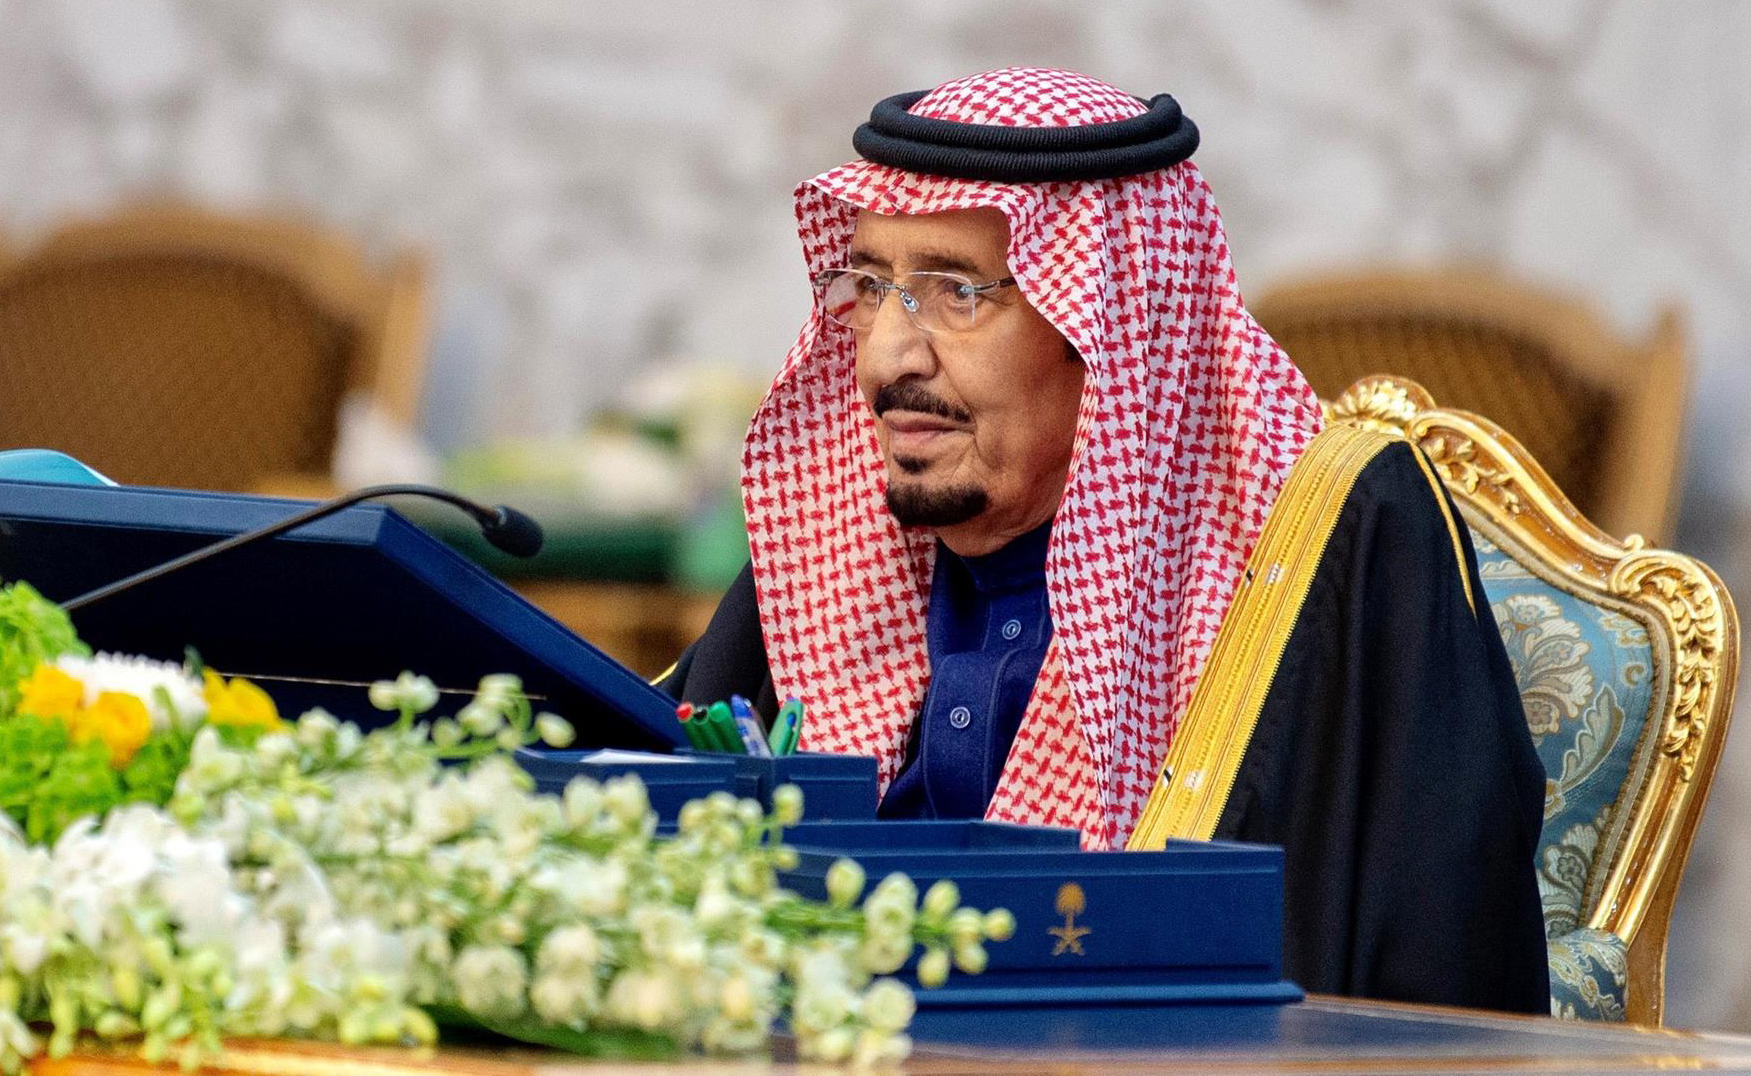 الملك سلمان يعفي مسؤولا كبيرا في الفريق المالي للحكومة السعودية